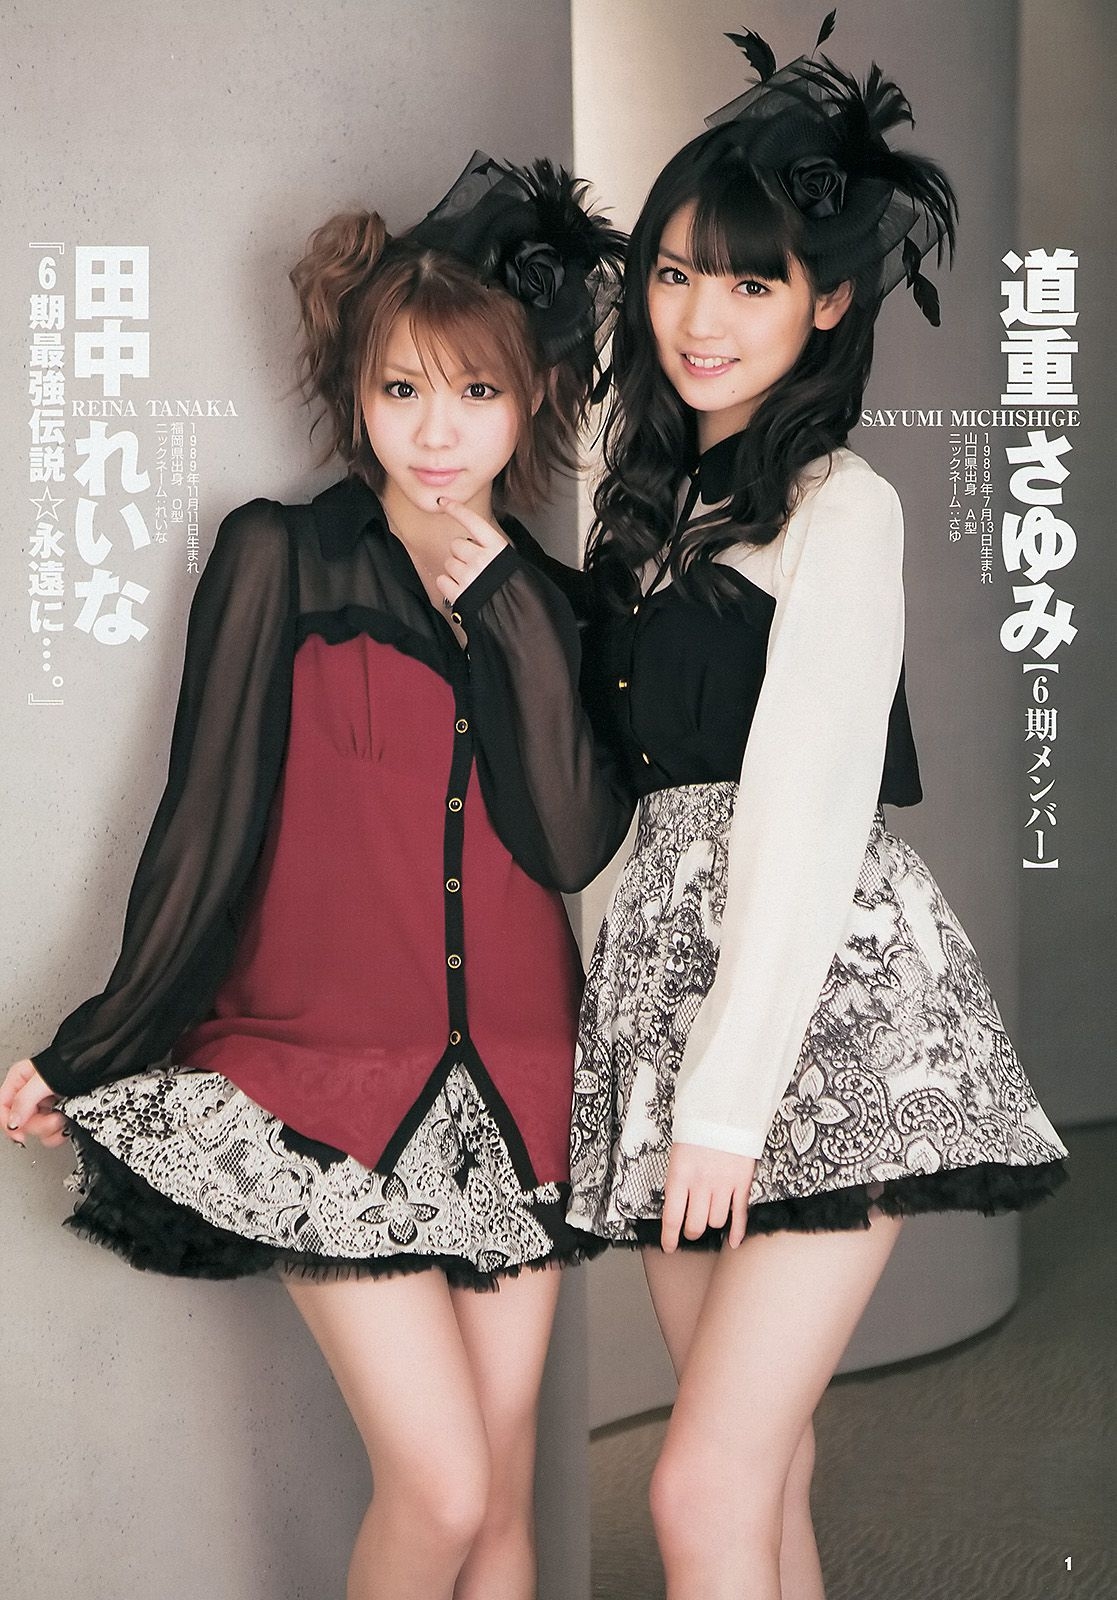 モーニング娘。 西内まりや [Weekly Young Jump] 2013年No.18 写真杂志  第0张